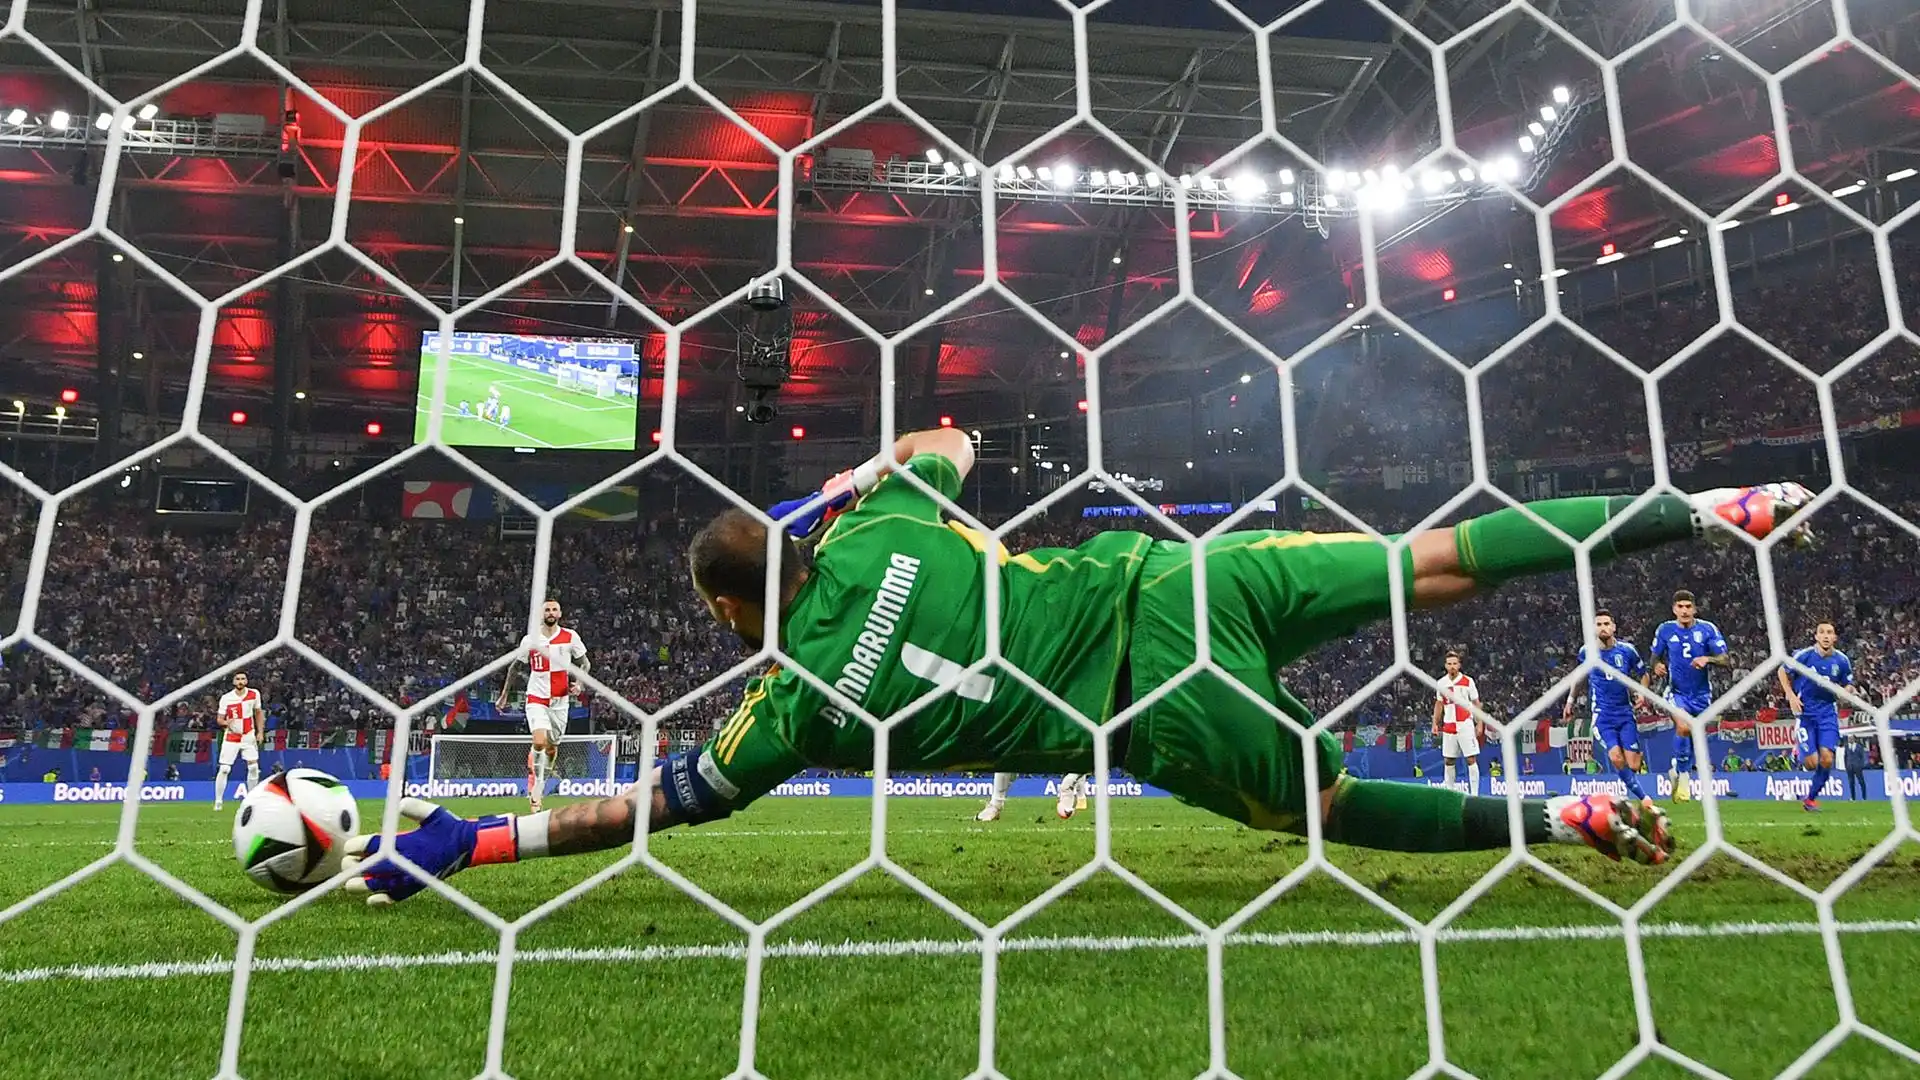 Rievocando la magia di Euro 2020, Gigio si è superato in tuffo respingendo il tiro dagli undici metri del fuoriclasse croato